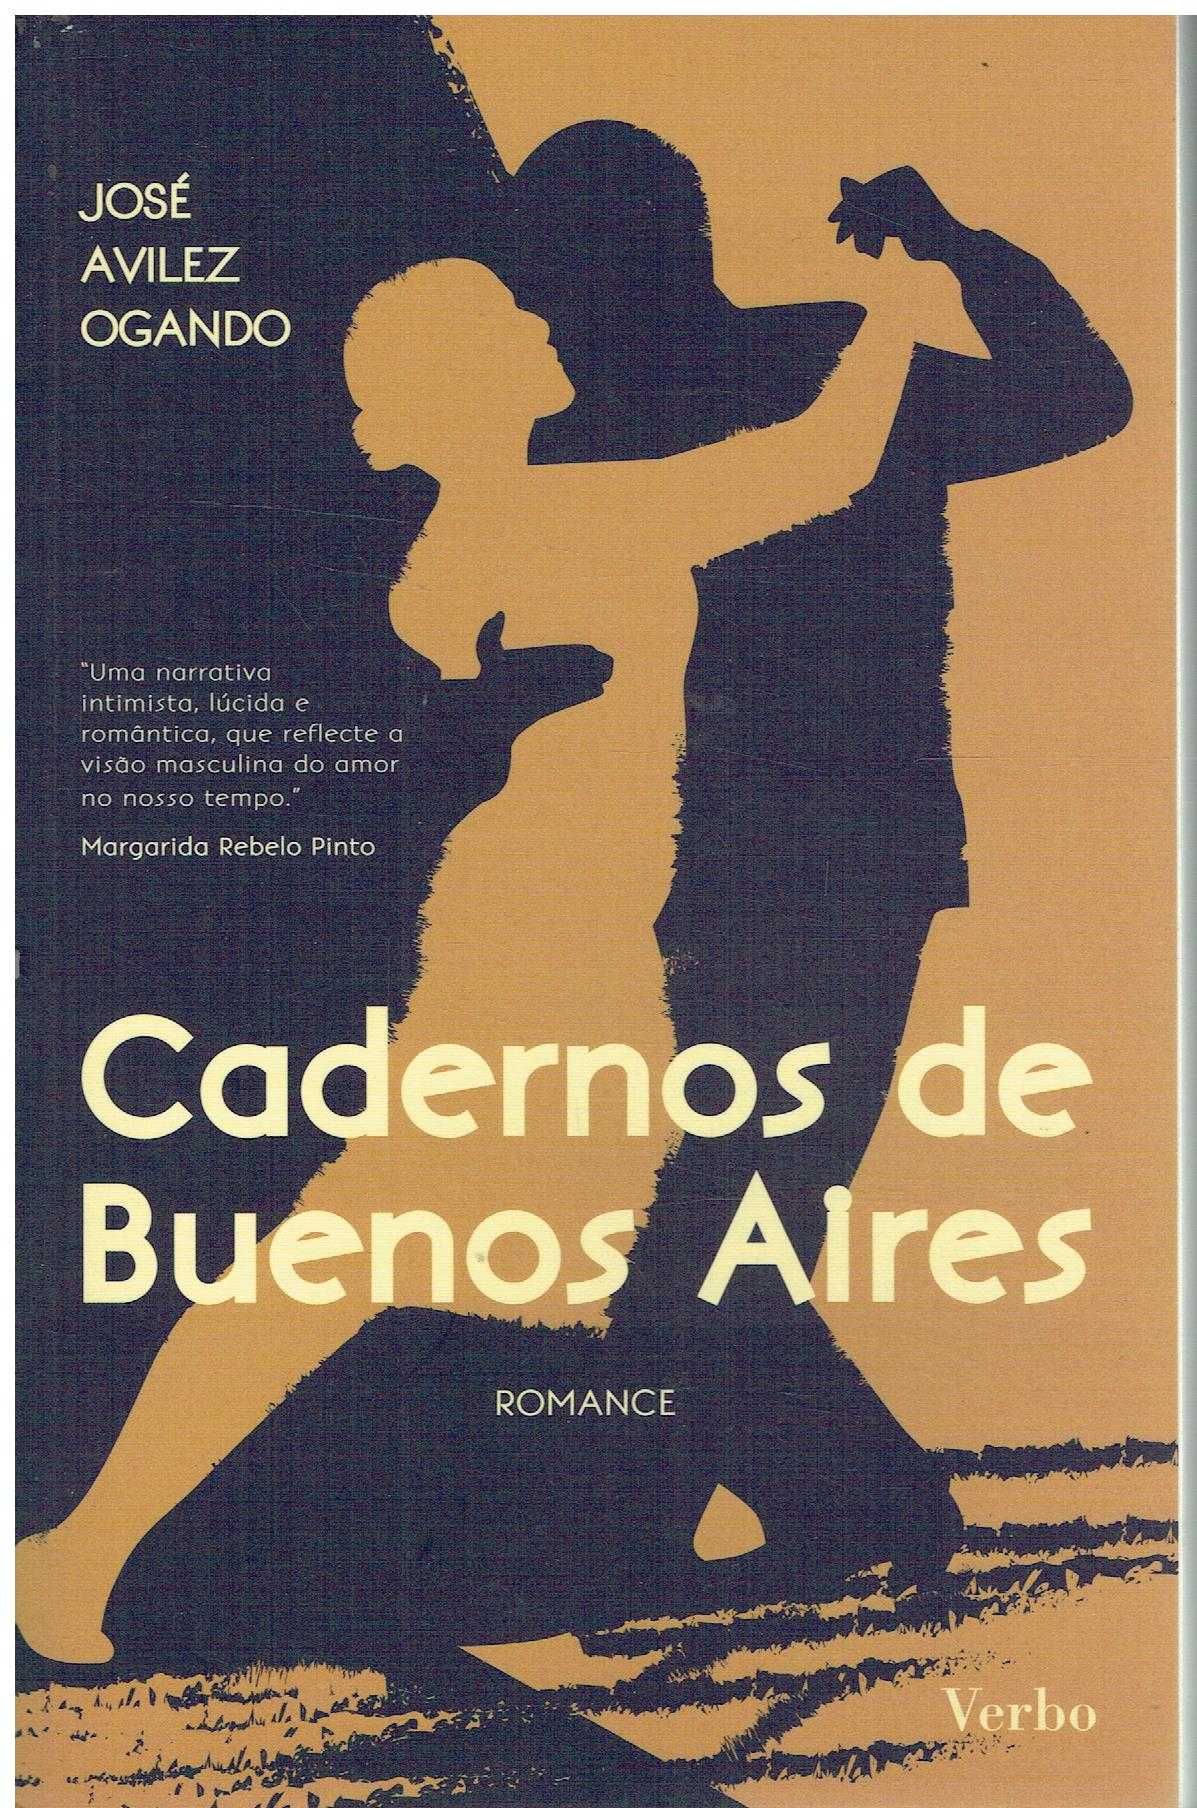 12346

Cadernos de Buenos Aires
de José Avillez Ogando